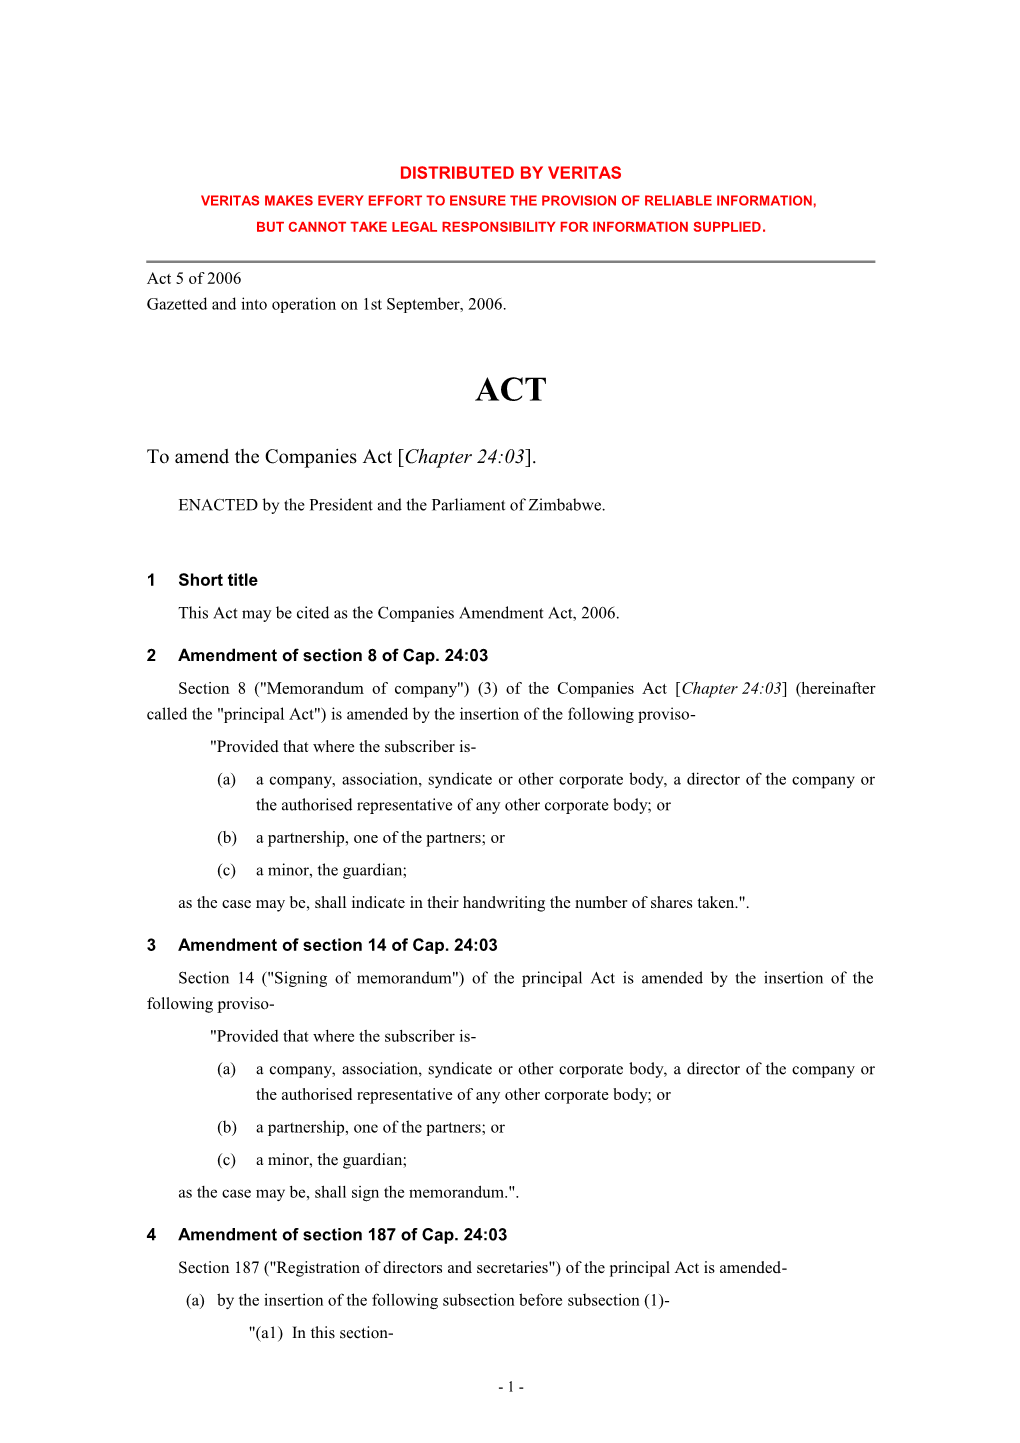 Companies Amendment Act 2006 - Act 5 Of-2006